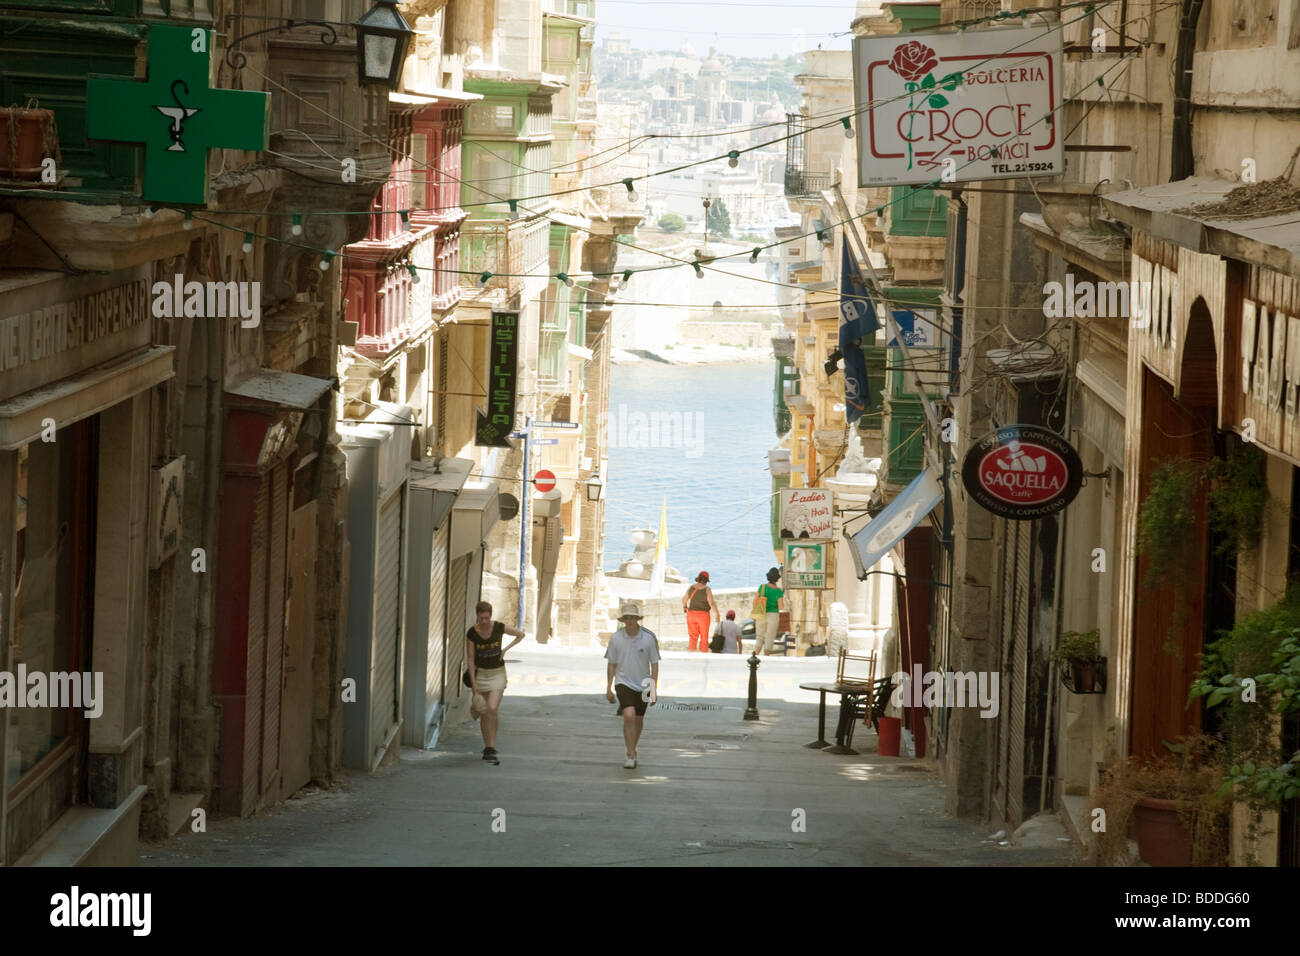 Street scene, Valletta, Malta Stock Photo - Alamy